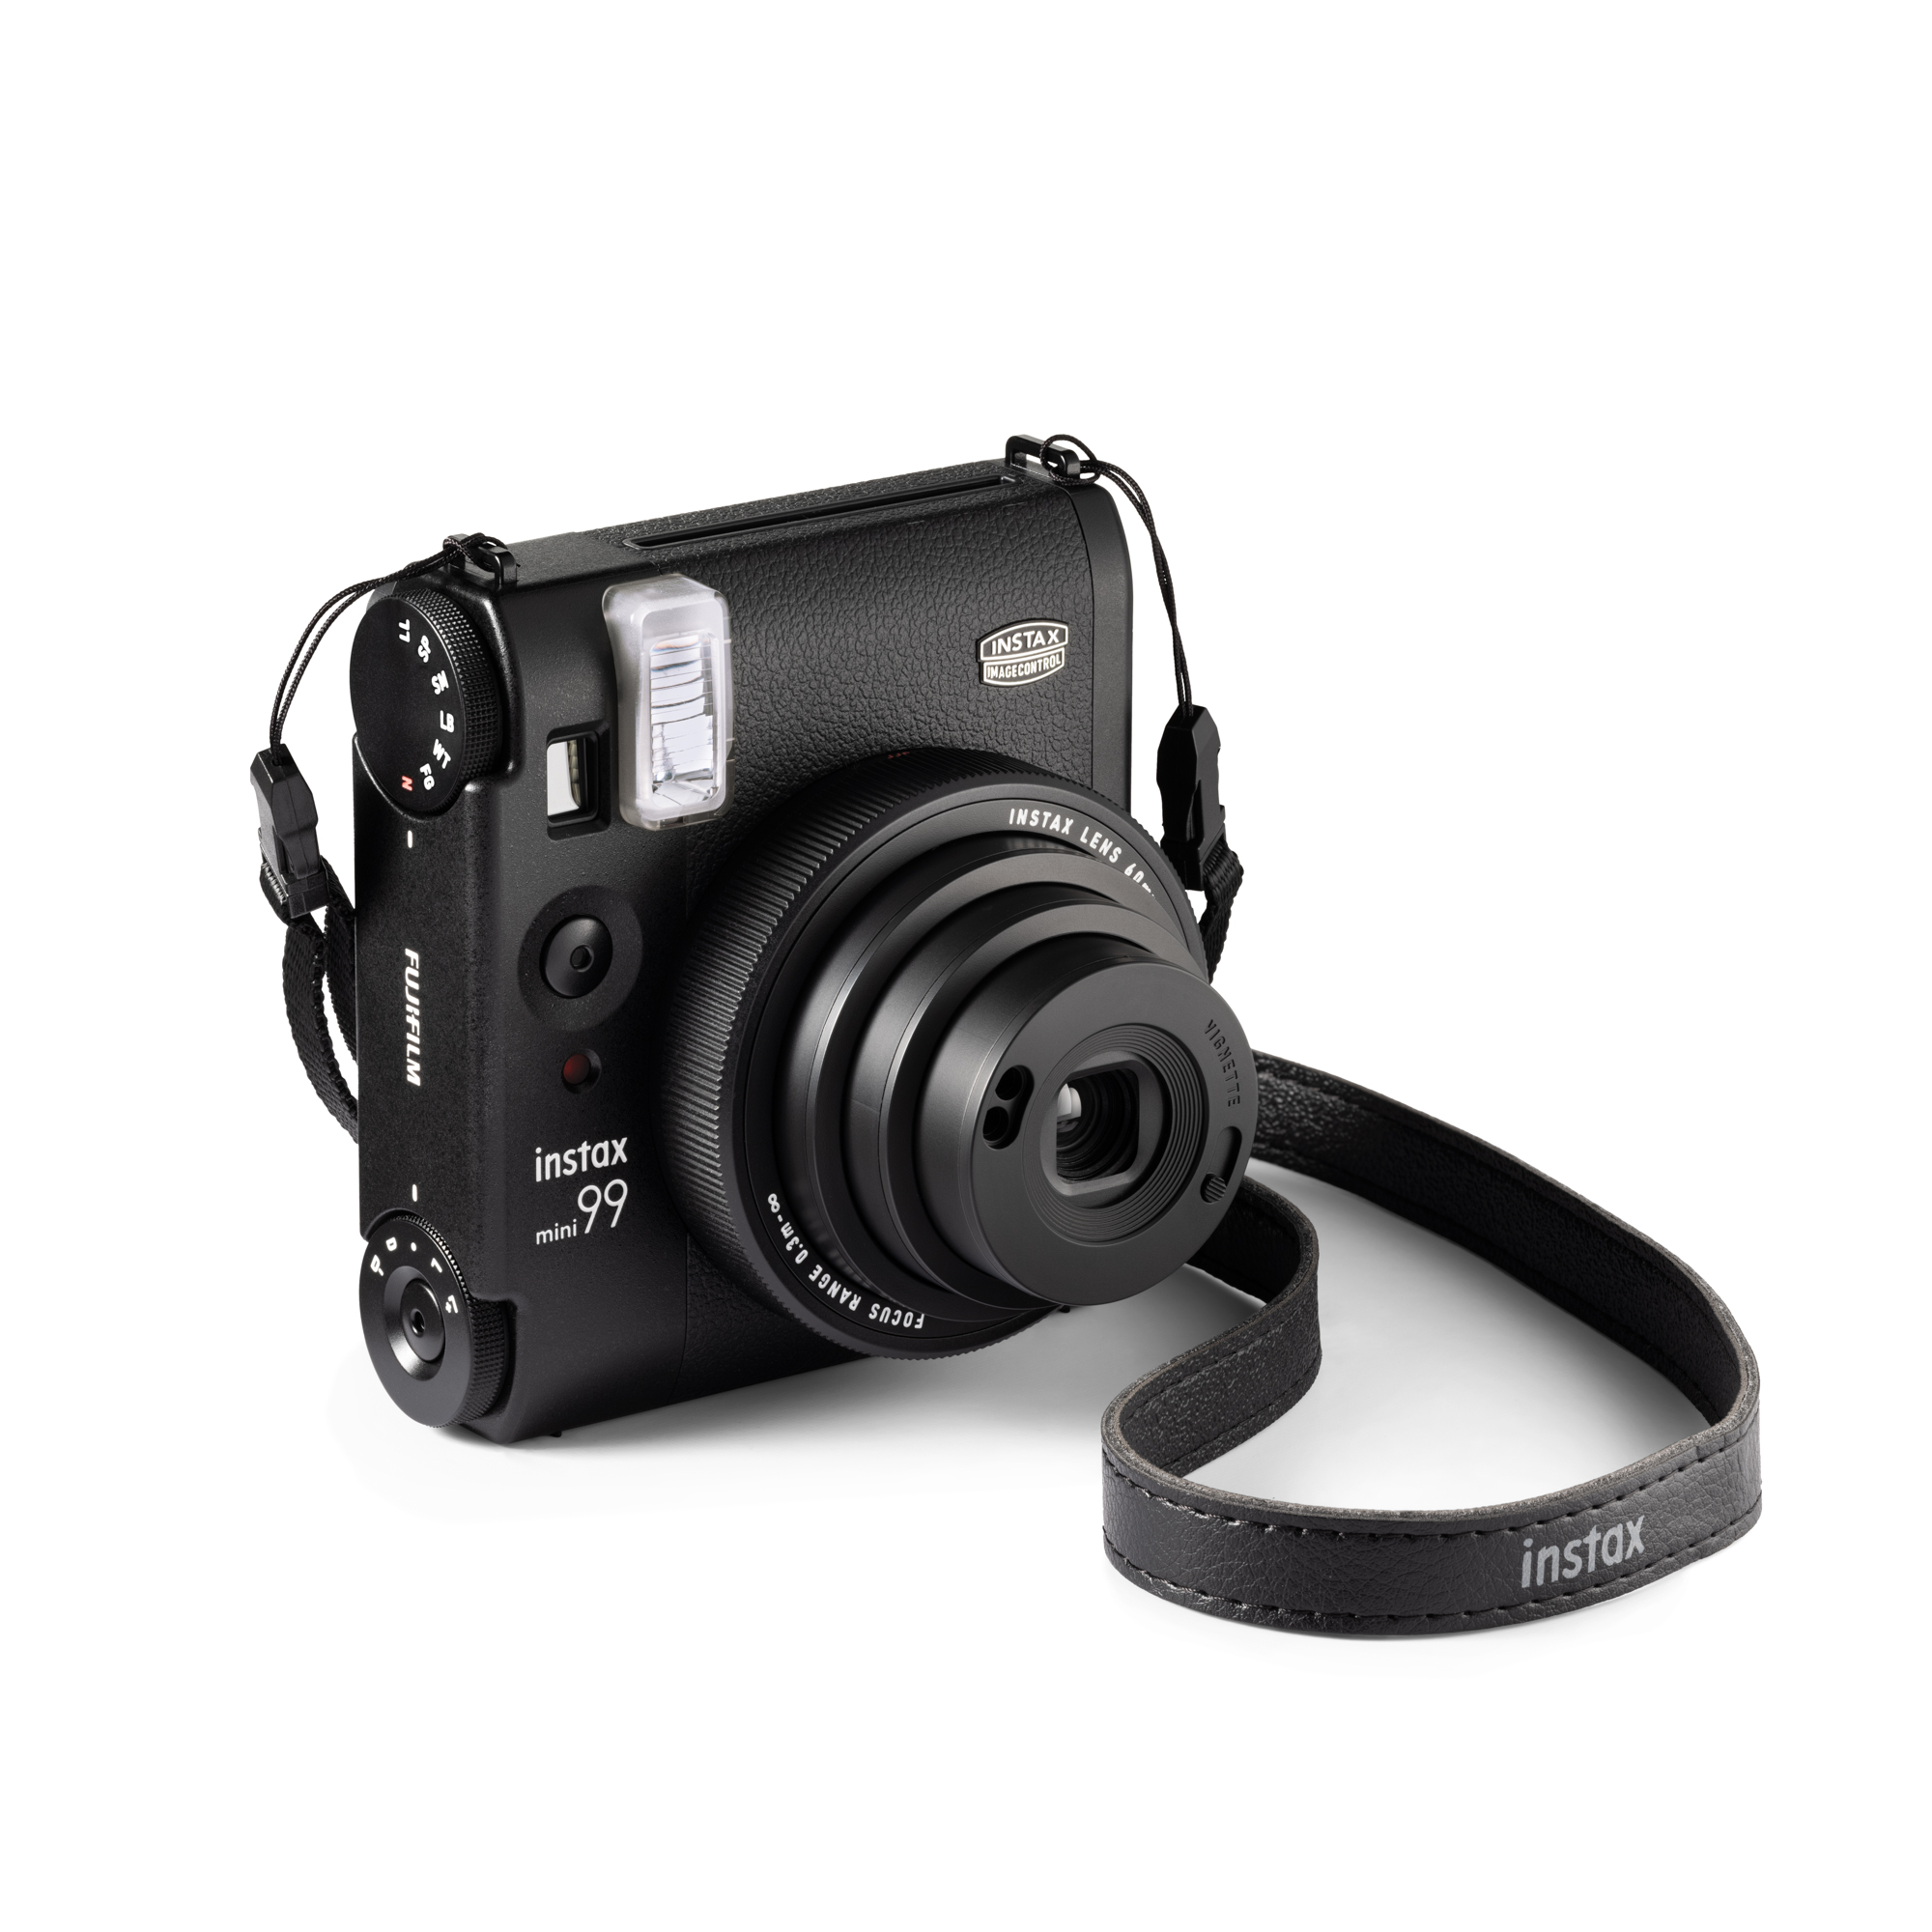 Kamera Instax Mini 99 Black Fujifilm